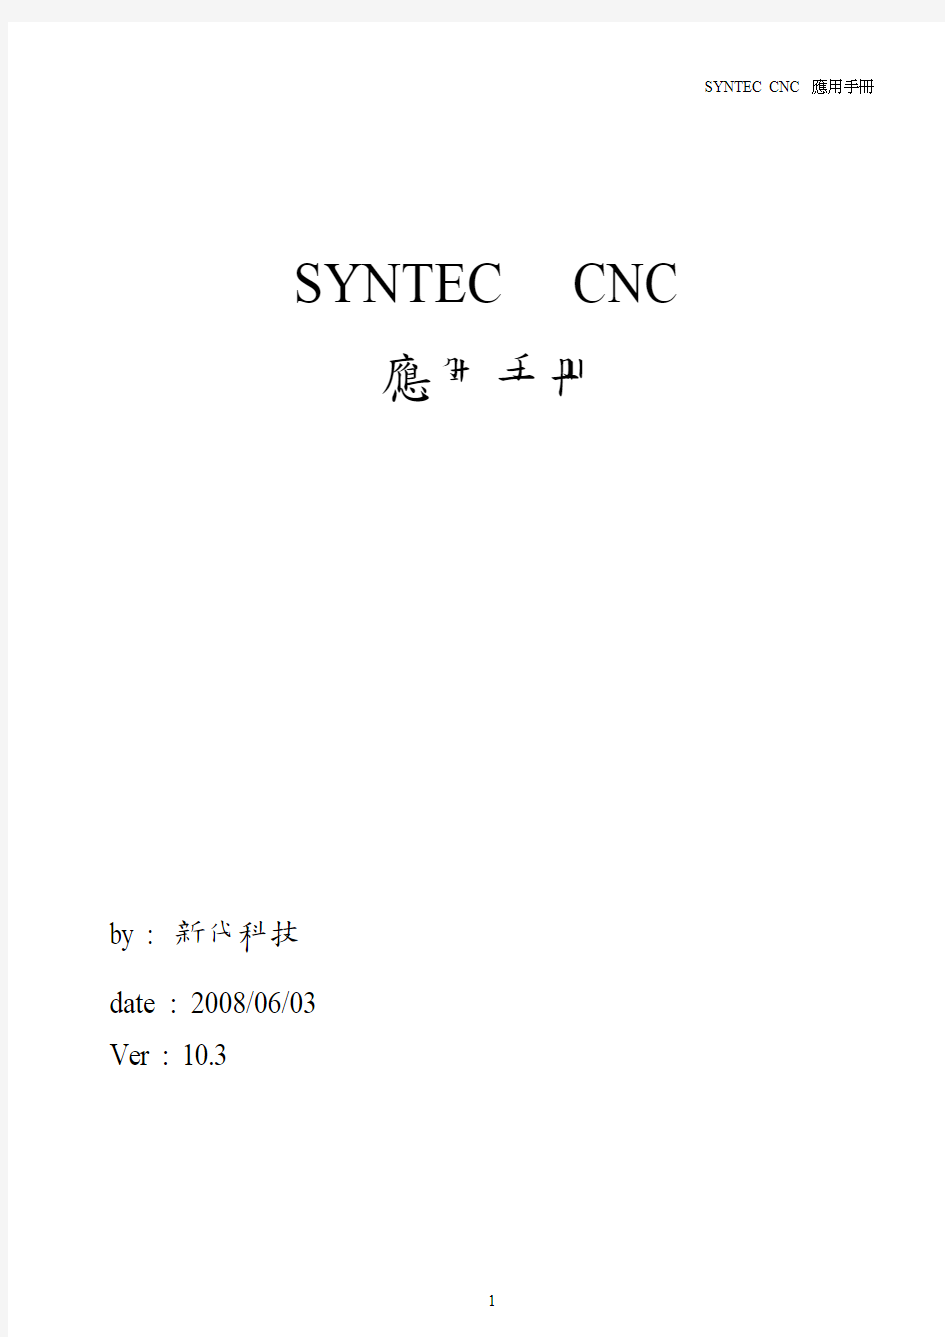 台湾新代数控系统SYNTEC-CNC应用手册V10